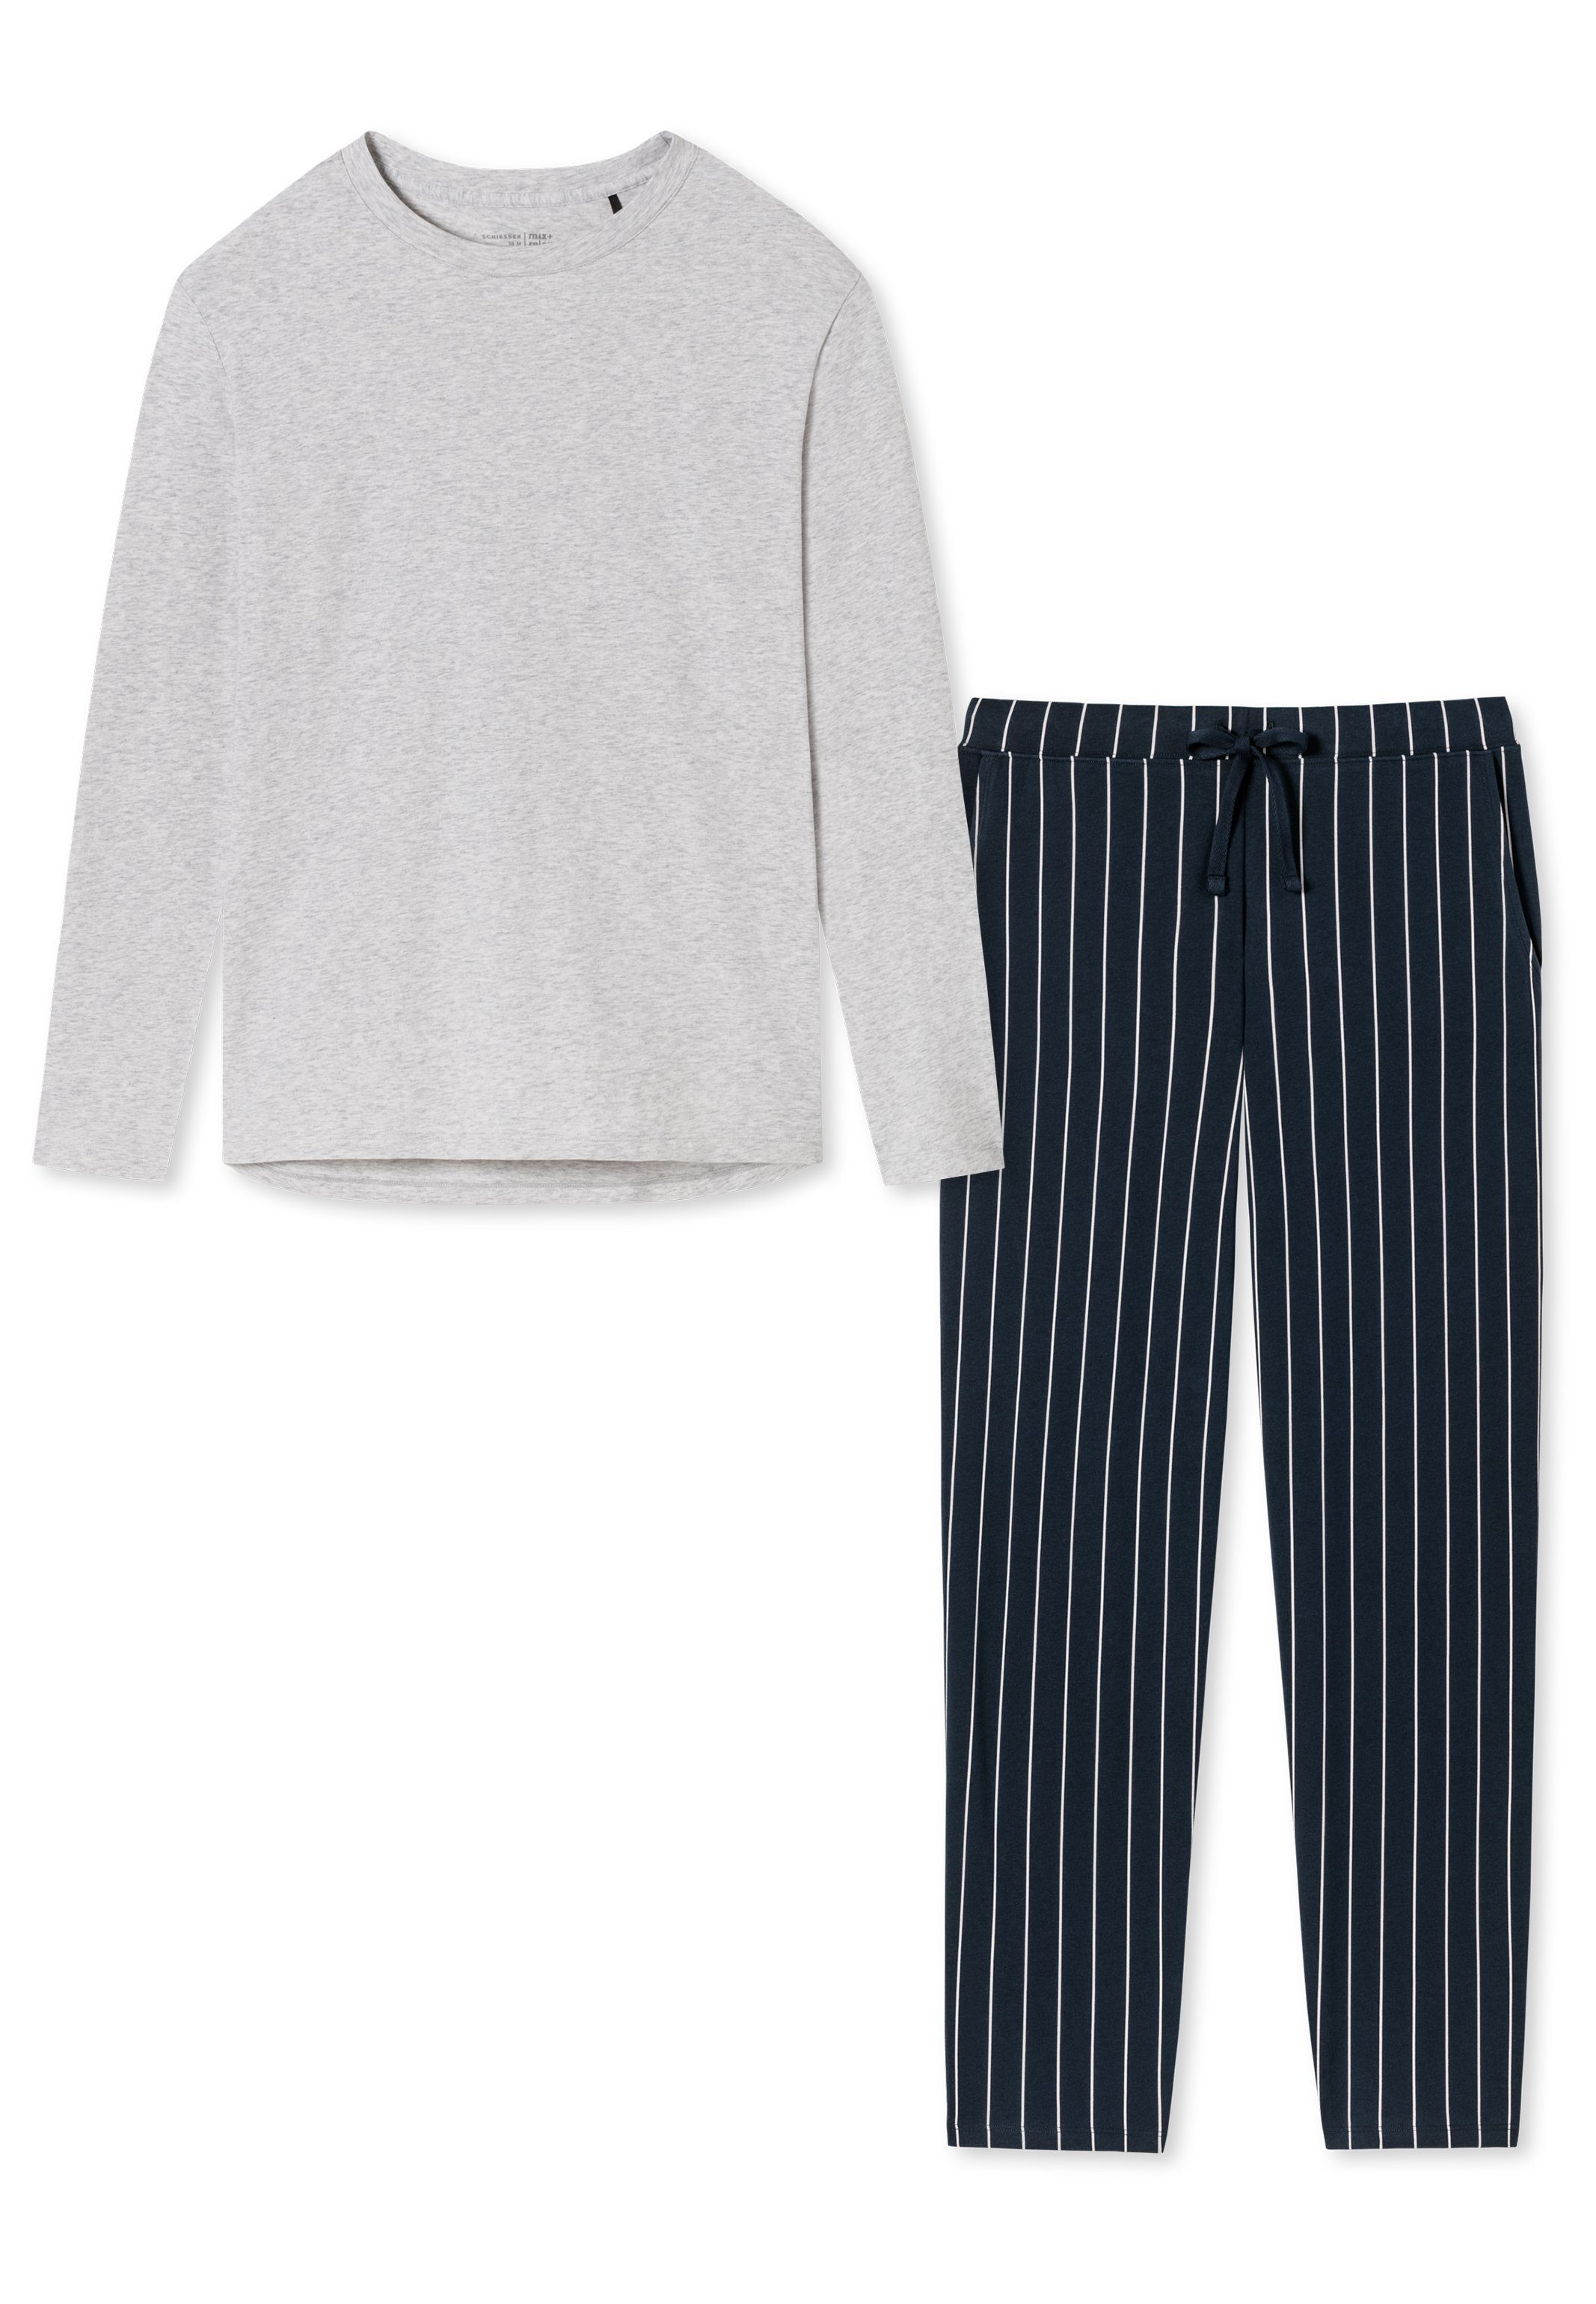 Baumwolle Organic gestreift Blau (Set, / Schlafanzug - Grau Schiesser - Pyjama 2 tlg) Cotton